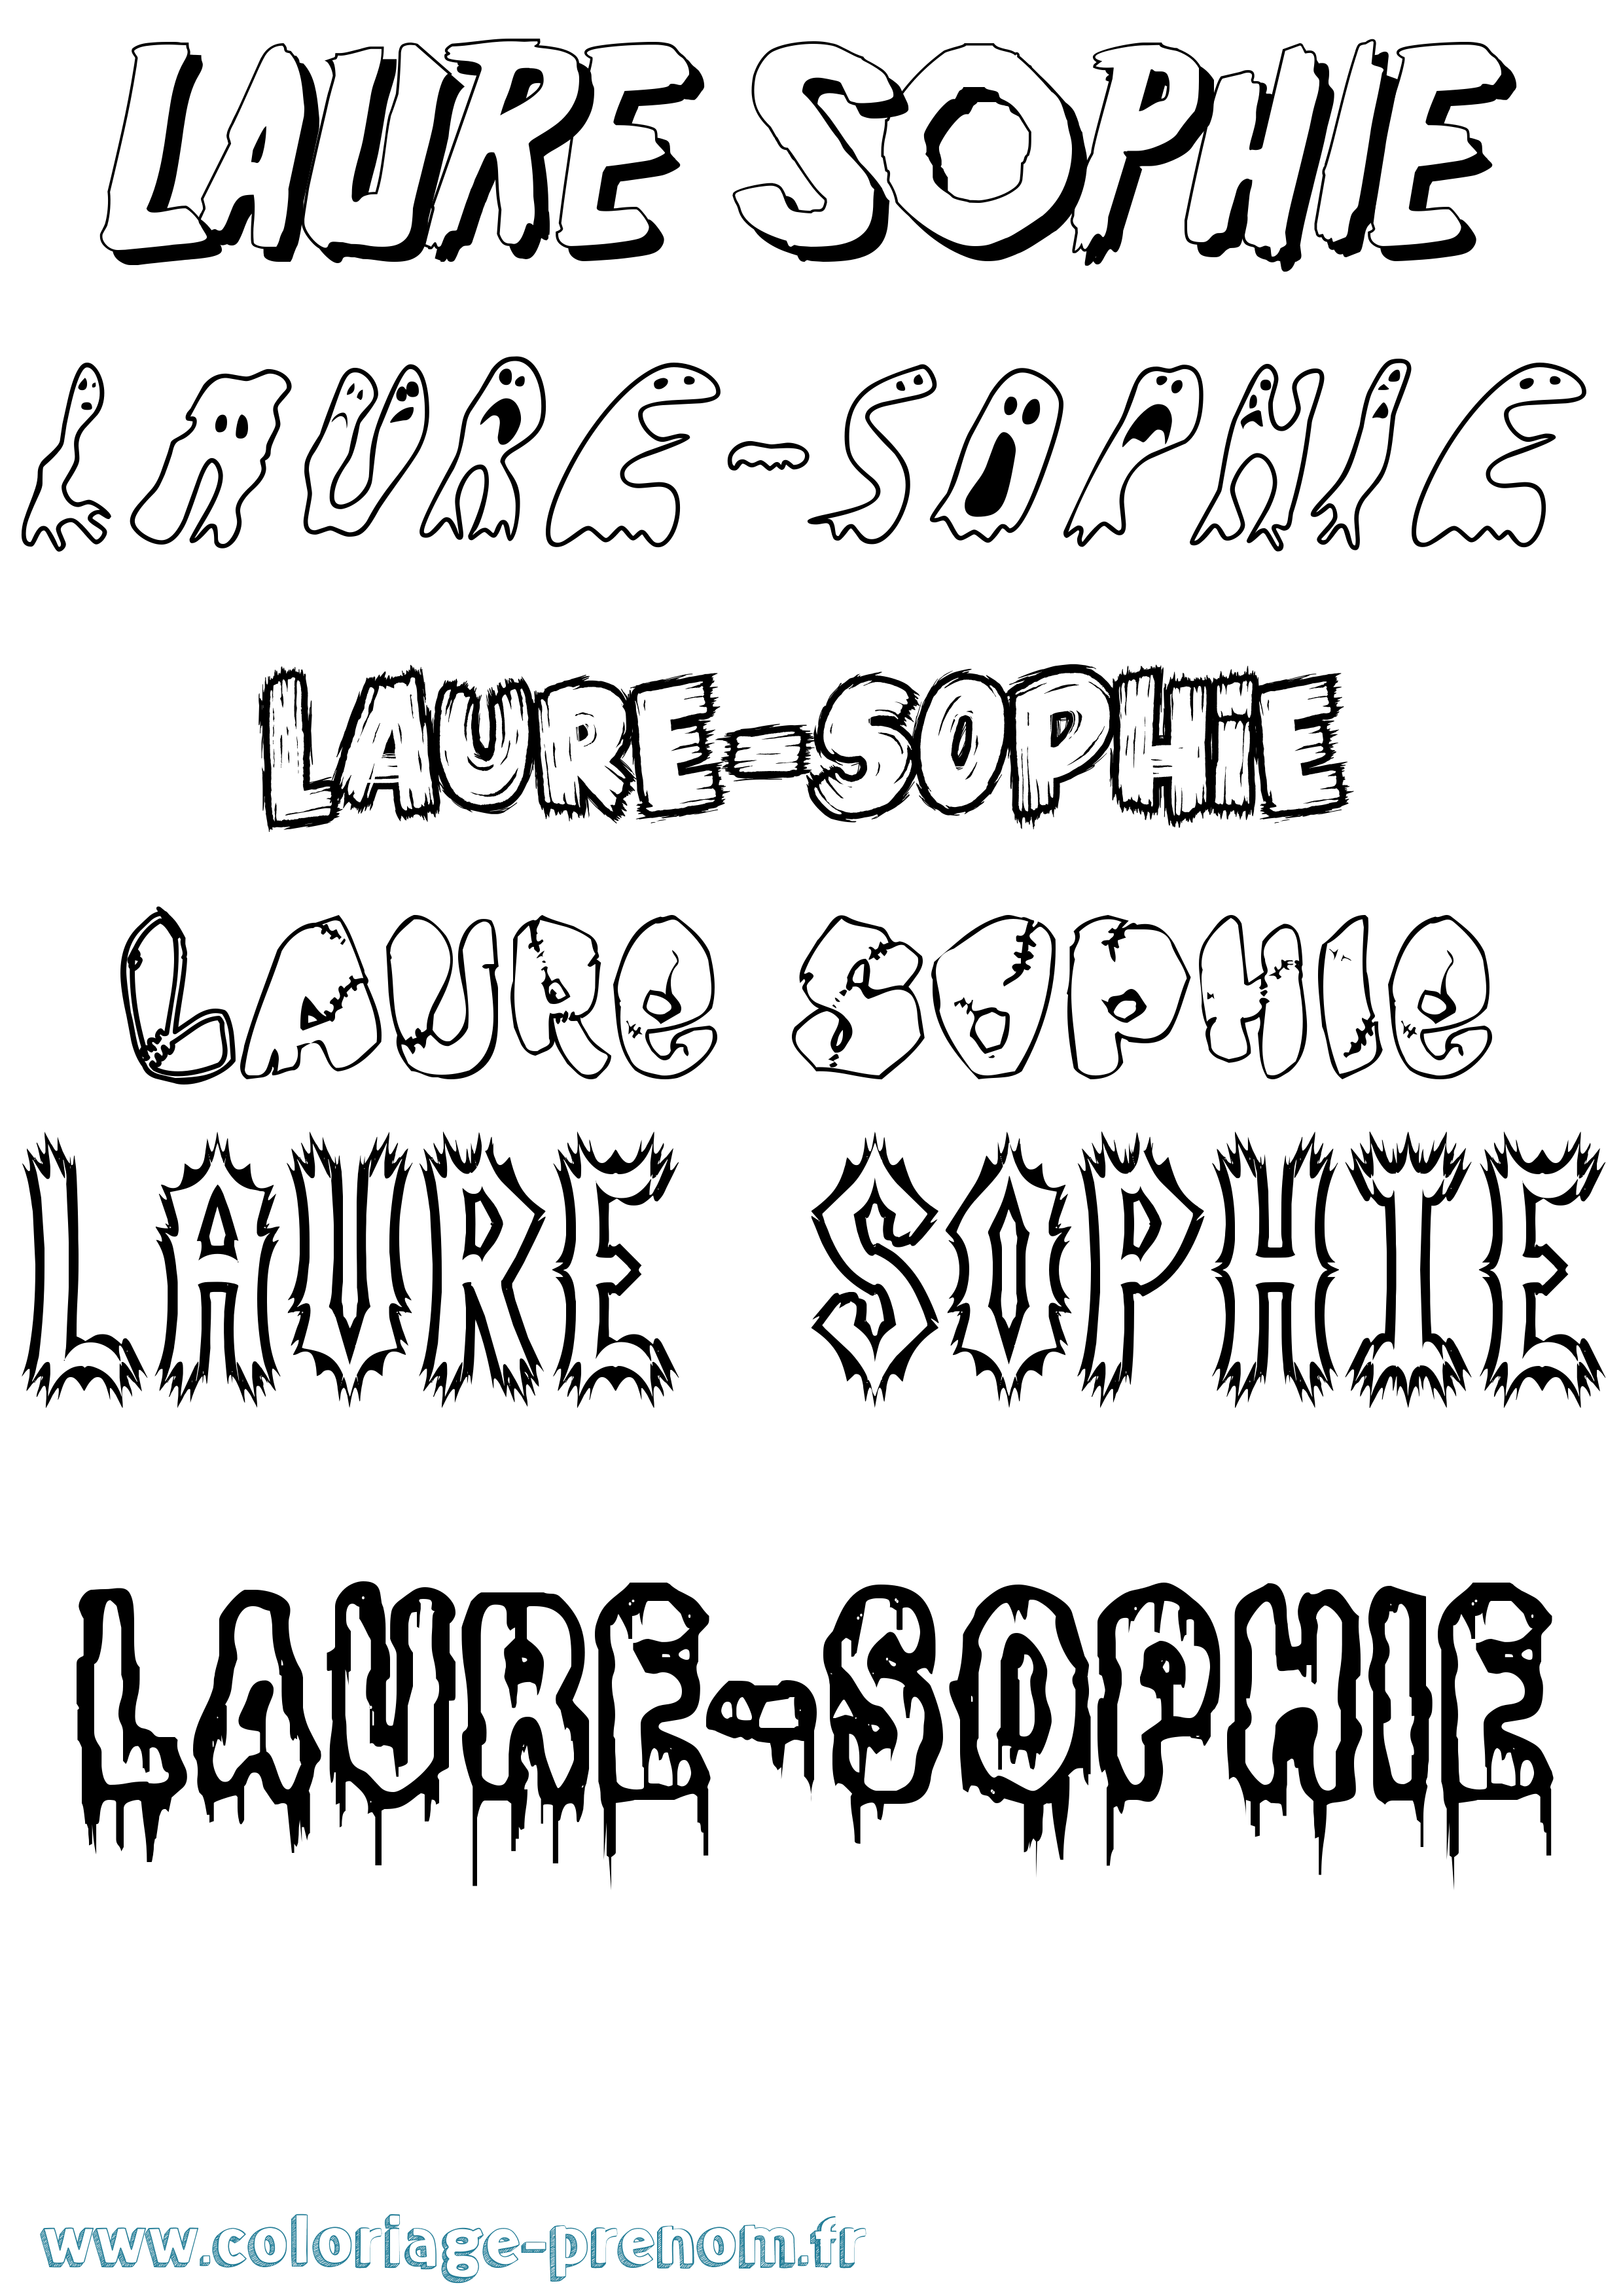 Coloriage prénom Laure-Sophie Frisson